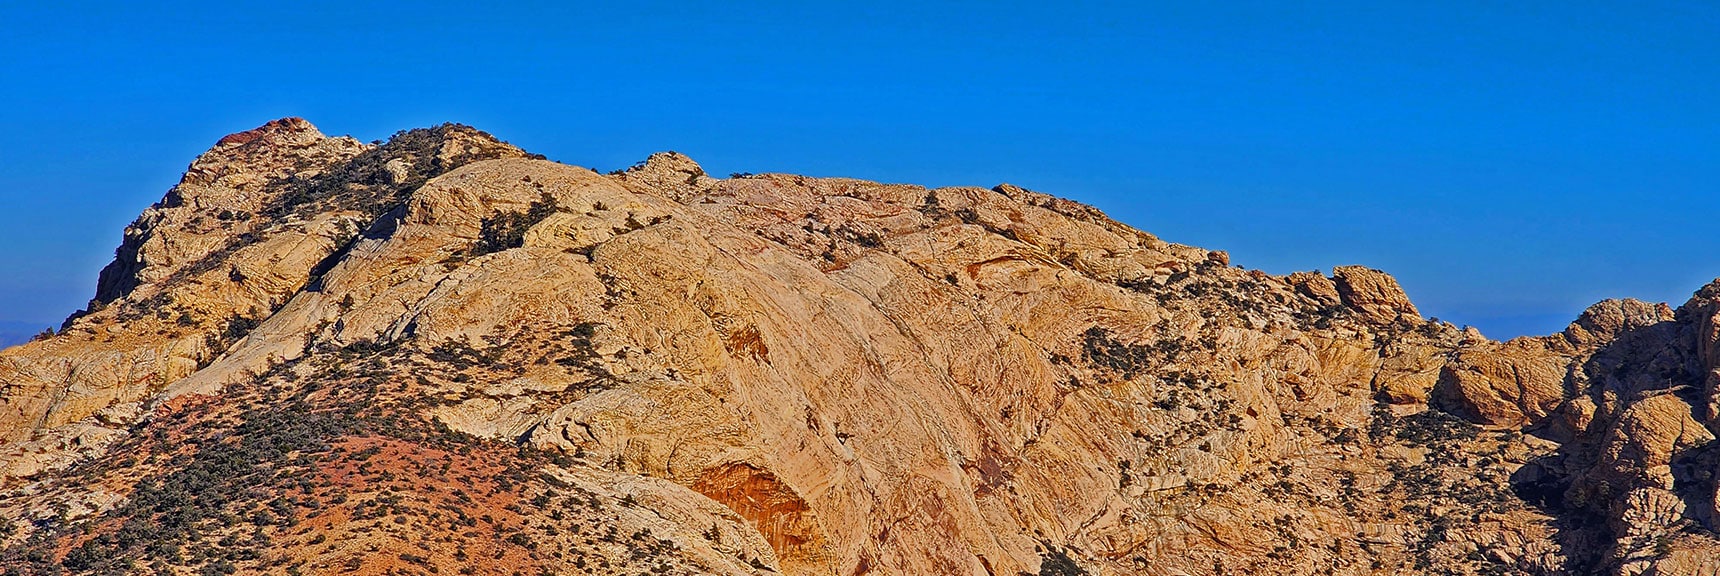 Northern - Mid Mt. Wilson Summit Area. | Rainbow Mountains Mid Upper Crest Ridgeline from Lovell Canyon, Nevada